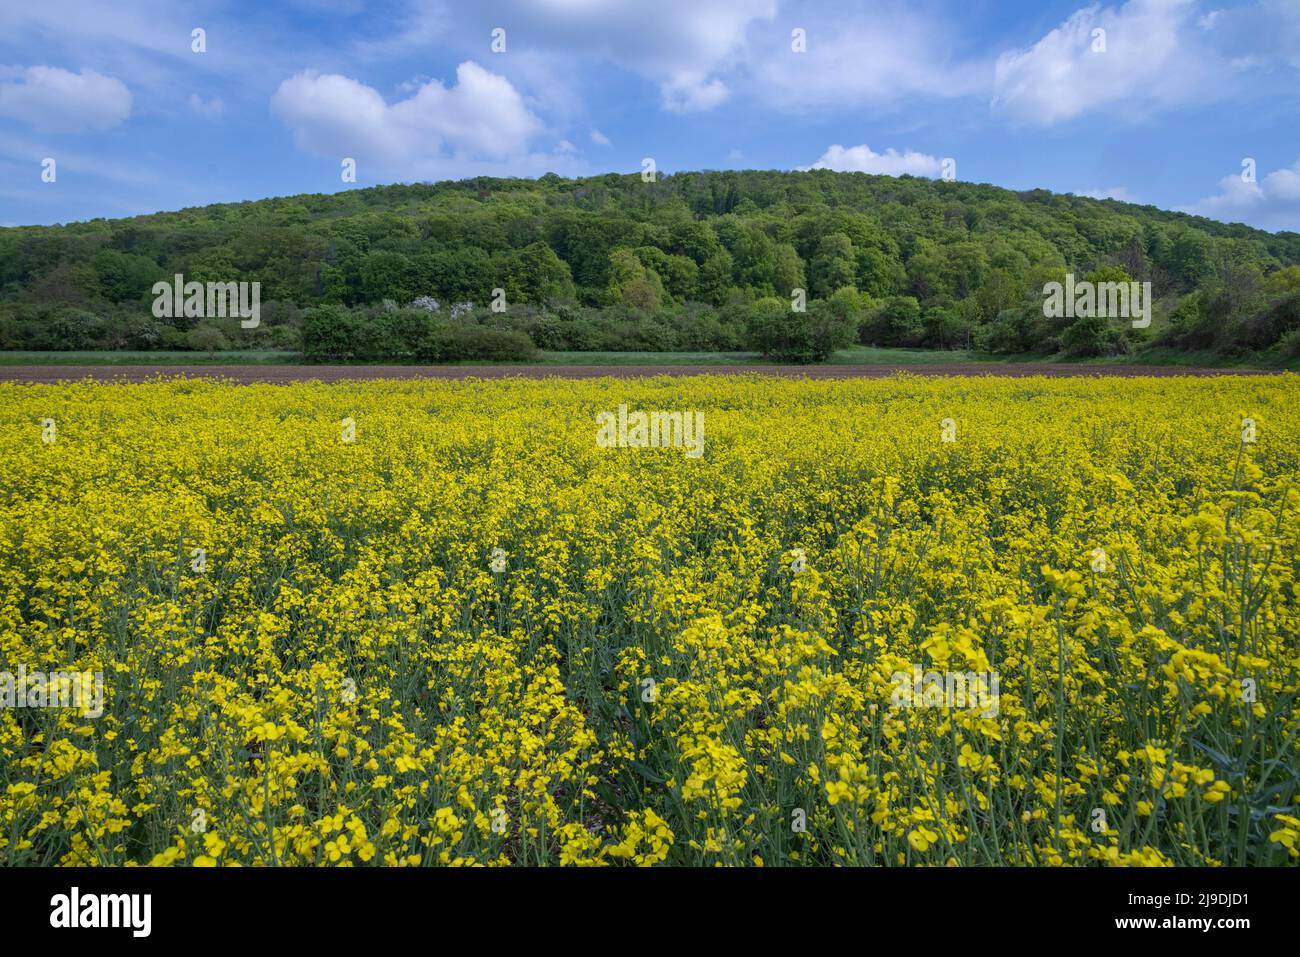 Campo di colza (Brassica napus) con collina boschiva alle spalle, nei pressi di Donauworth, Franconia, Germania Foto Stock